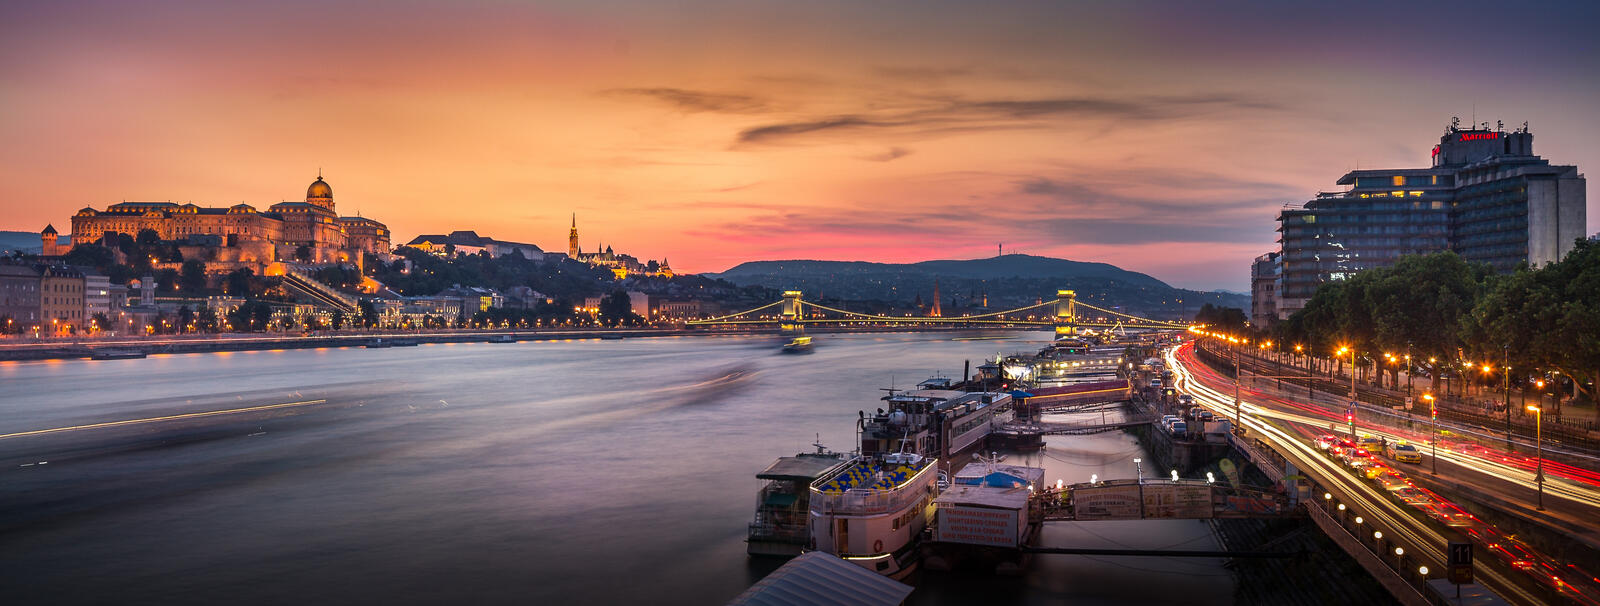 Обои Budapest Будапешт с Будайским замком Цепным мостом на рабочий стол